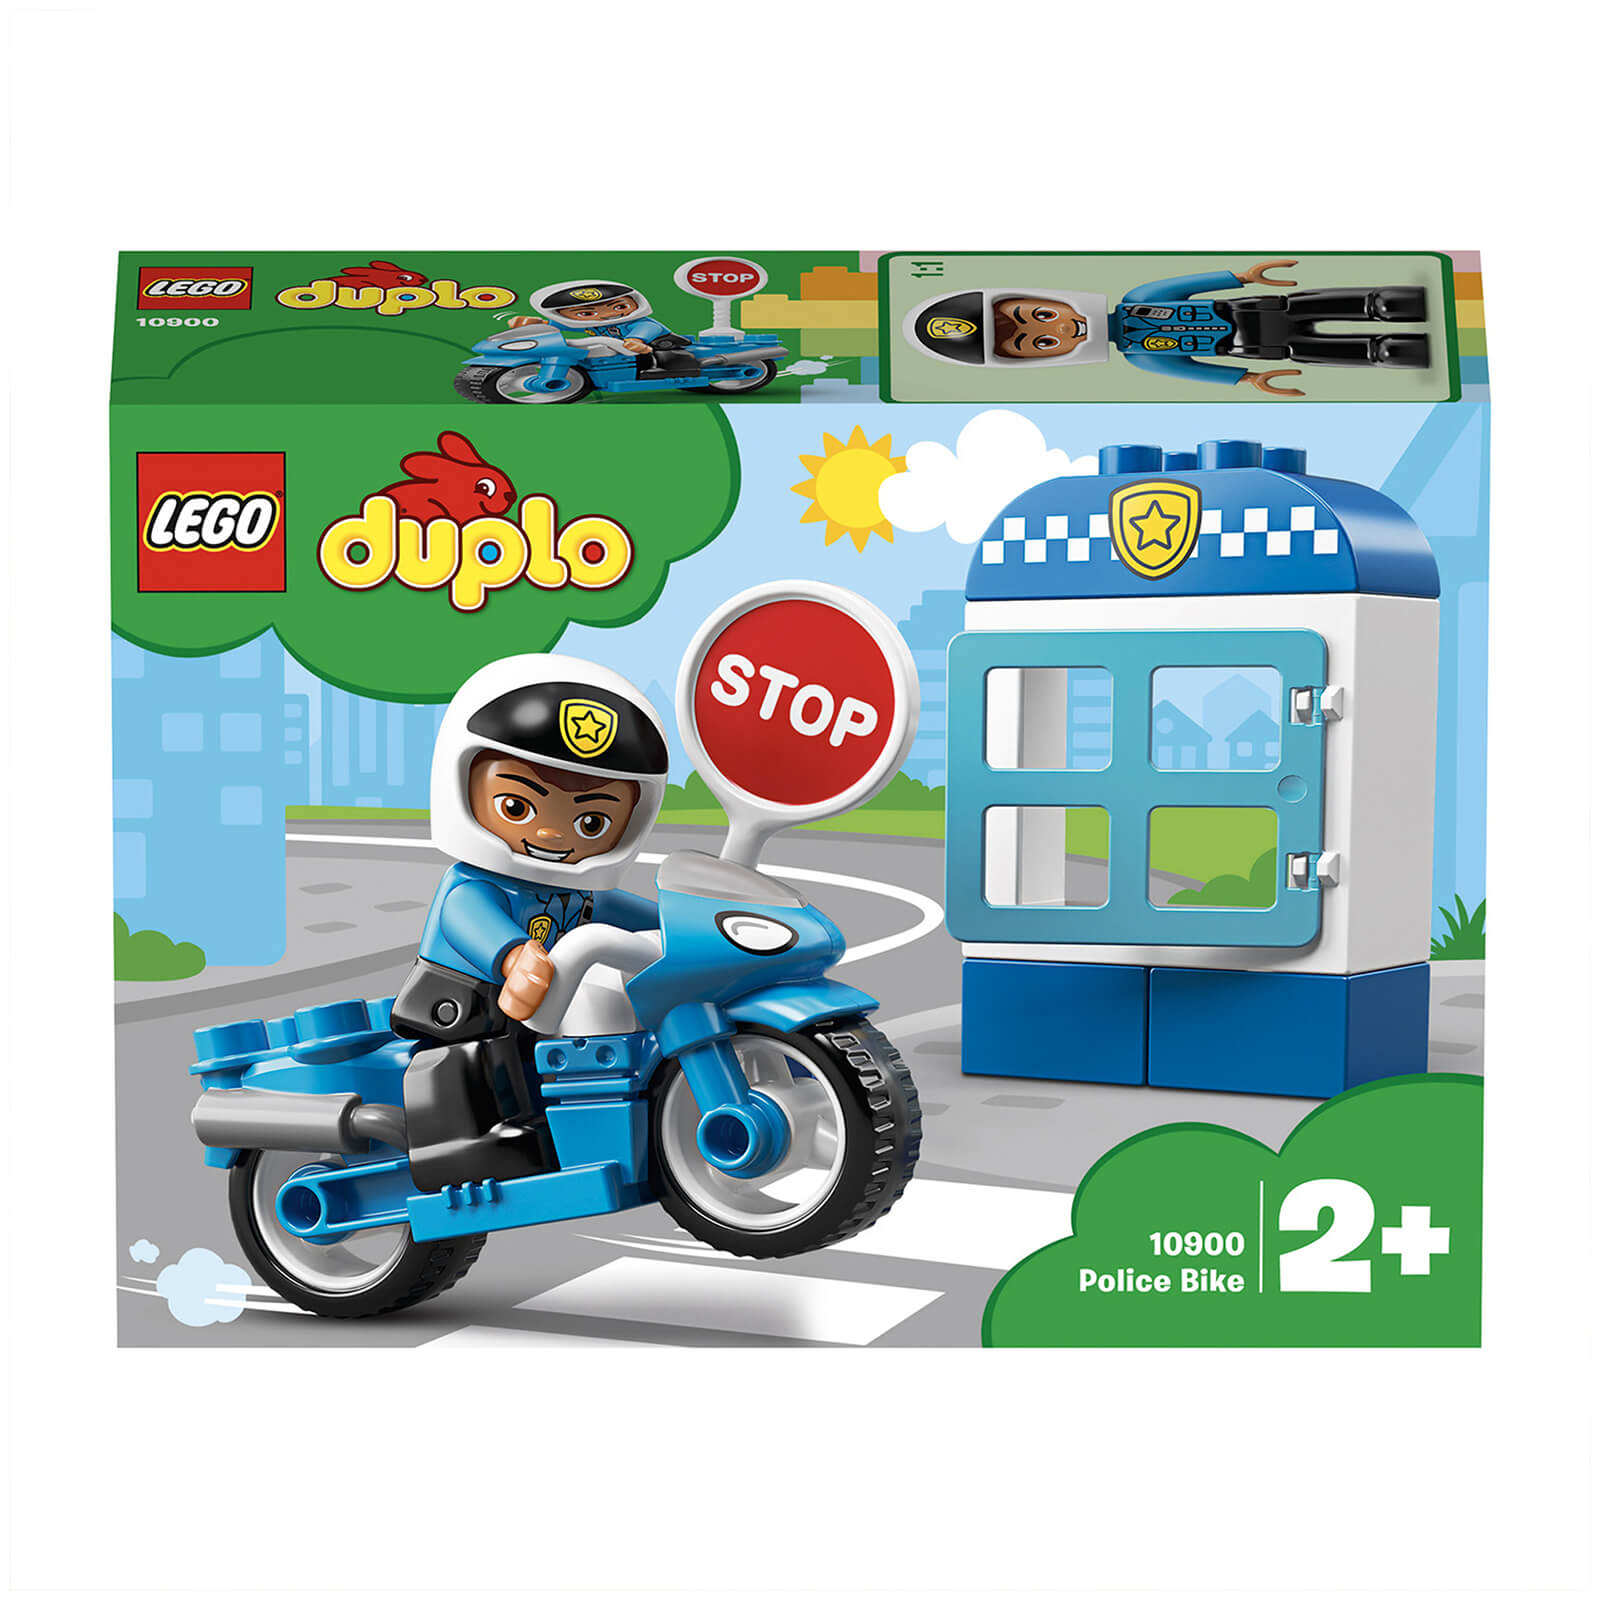 LEGO DUPLO Town: Juego de construcción de bicicleta y comisaría de policía (10900)